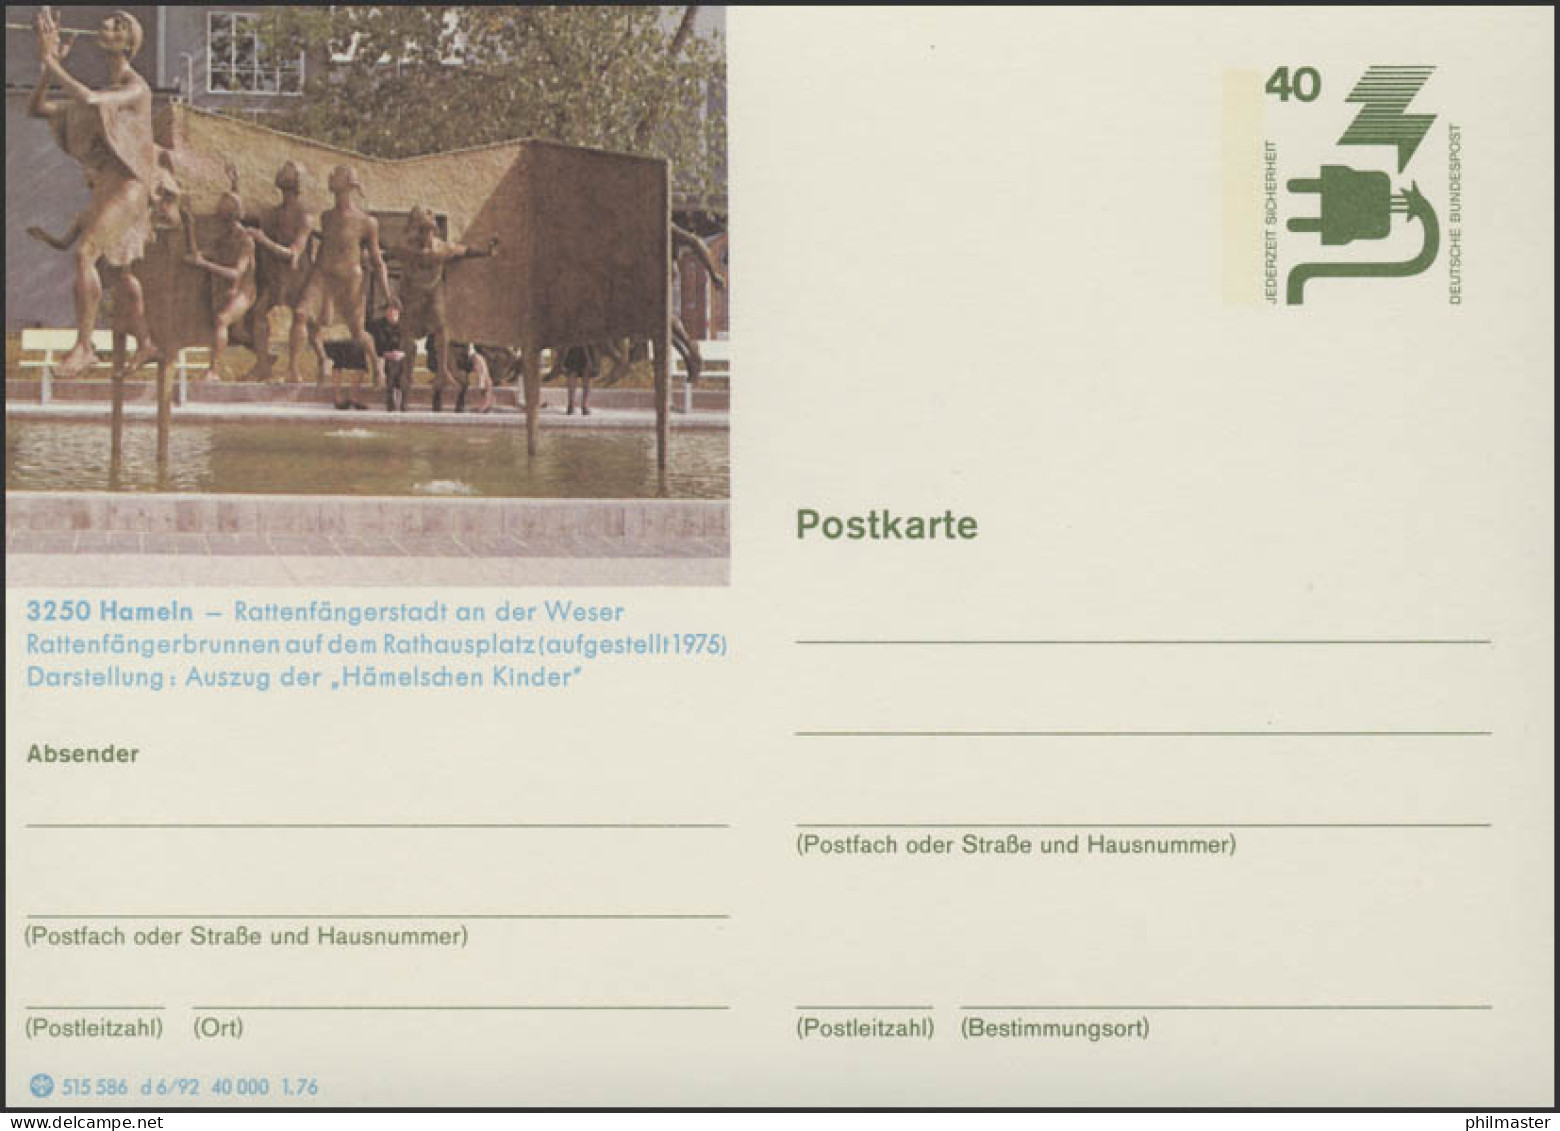 P120-d6/092 3250 Hameln, Rattenfängerbrunnen, ** - Illustrated Postcards - Mint